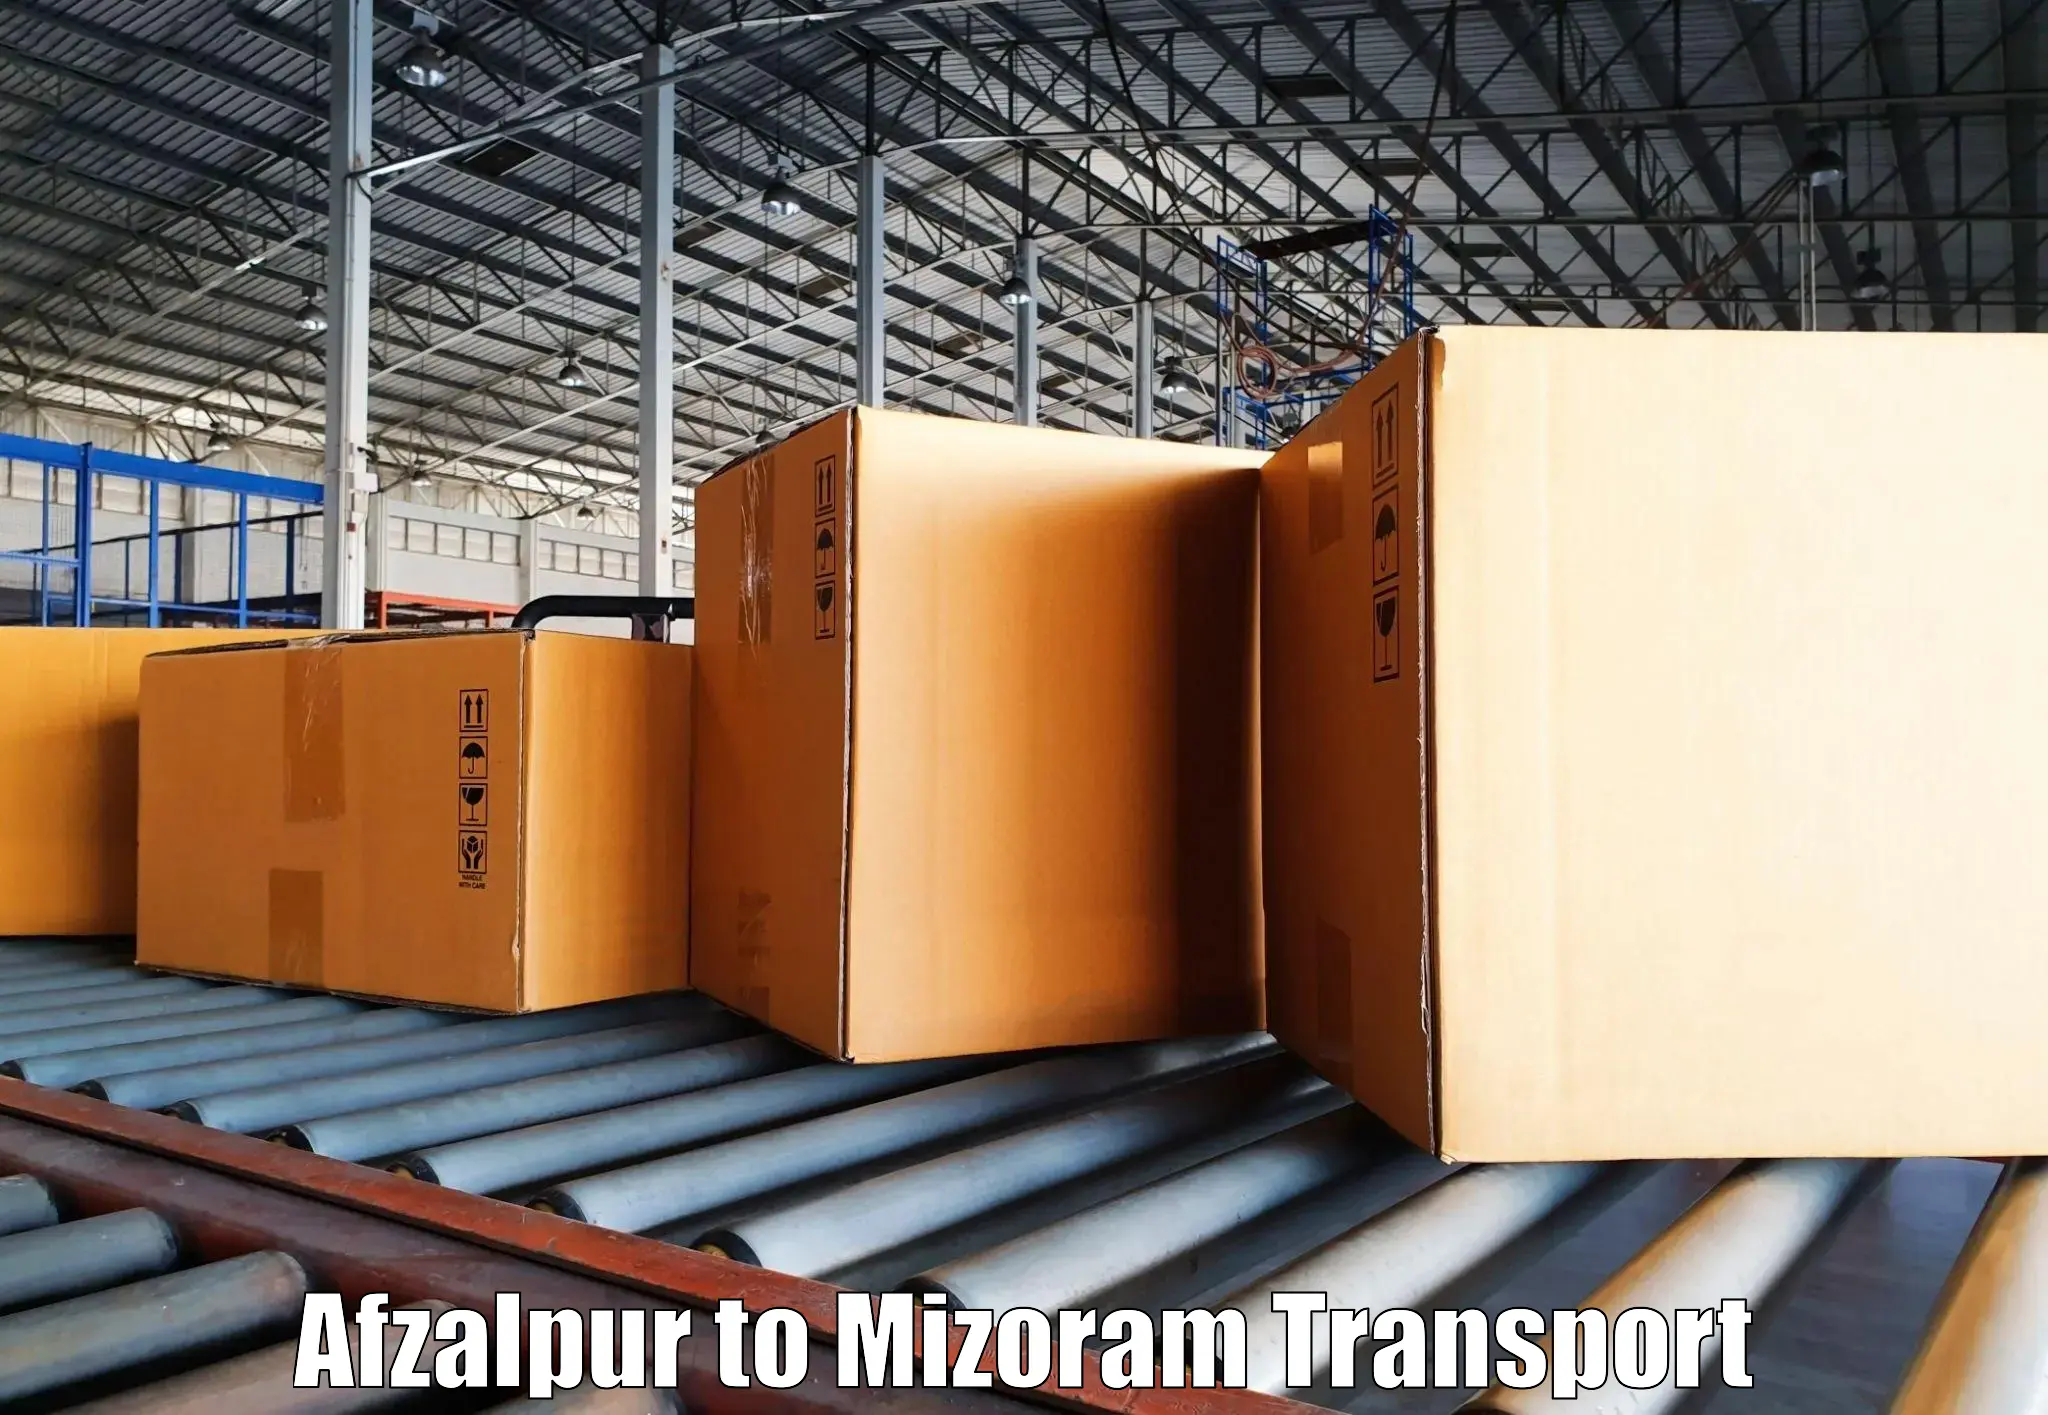 Delivery service Afzalpur to Aizawl